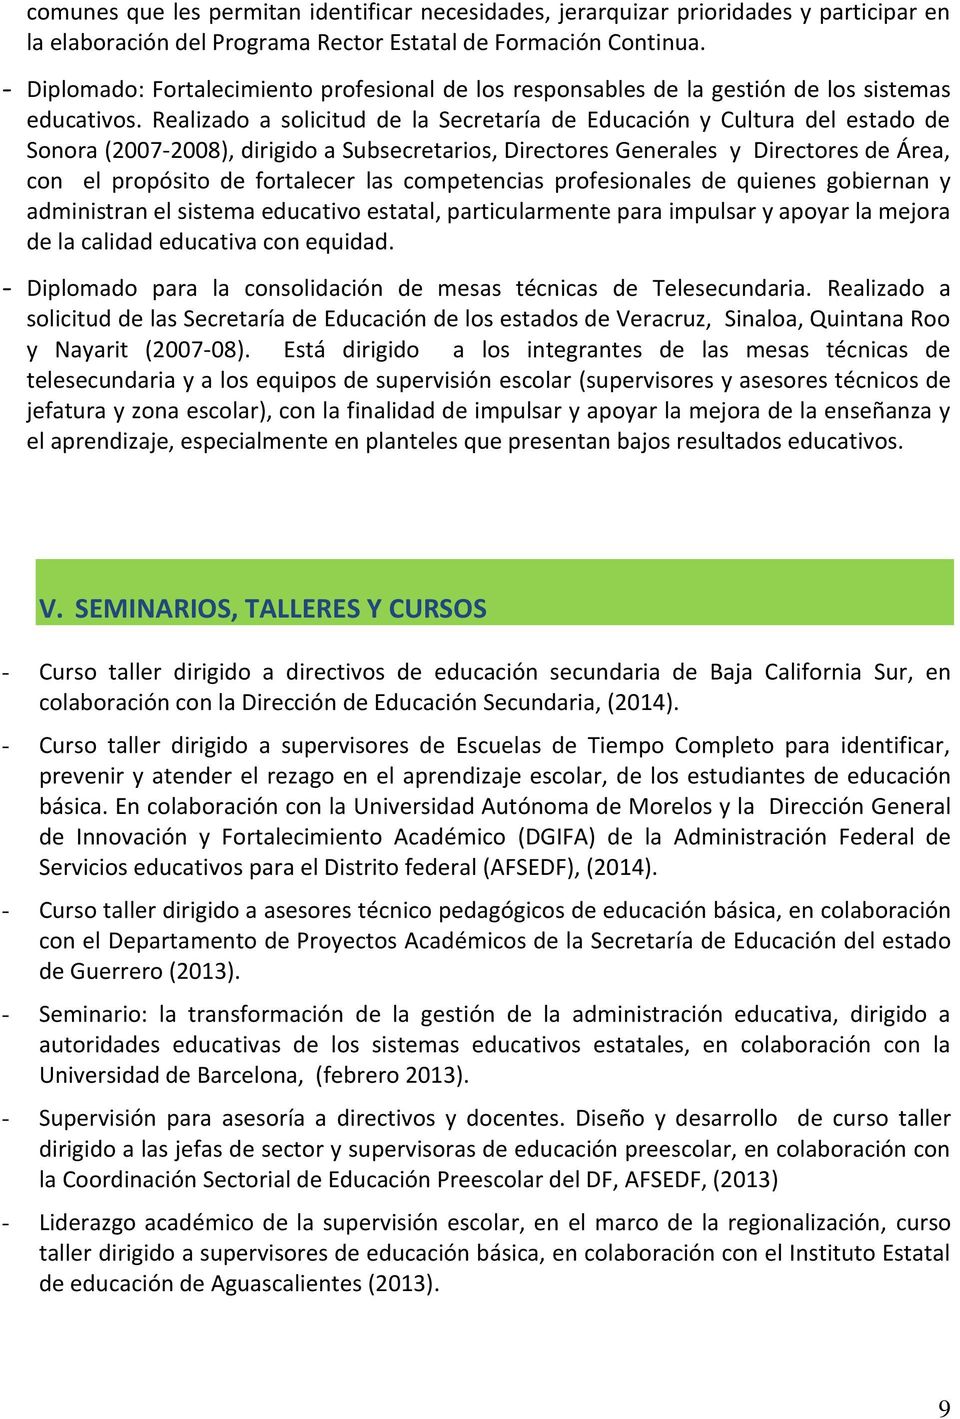 Realizado a solicitud de la Secretaría de Educación y Cultura del estado de Sonora (2007-2008), dirigido a Subsecretarios, Directores Generales y Directores de Área, con el propósito de fortalecer